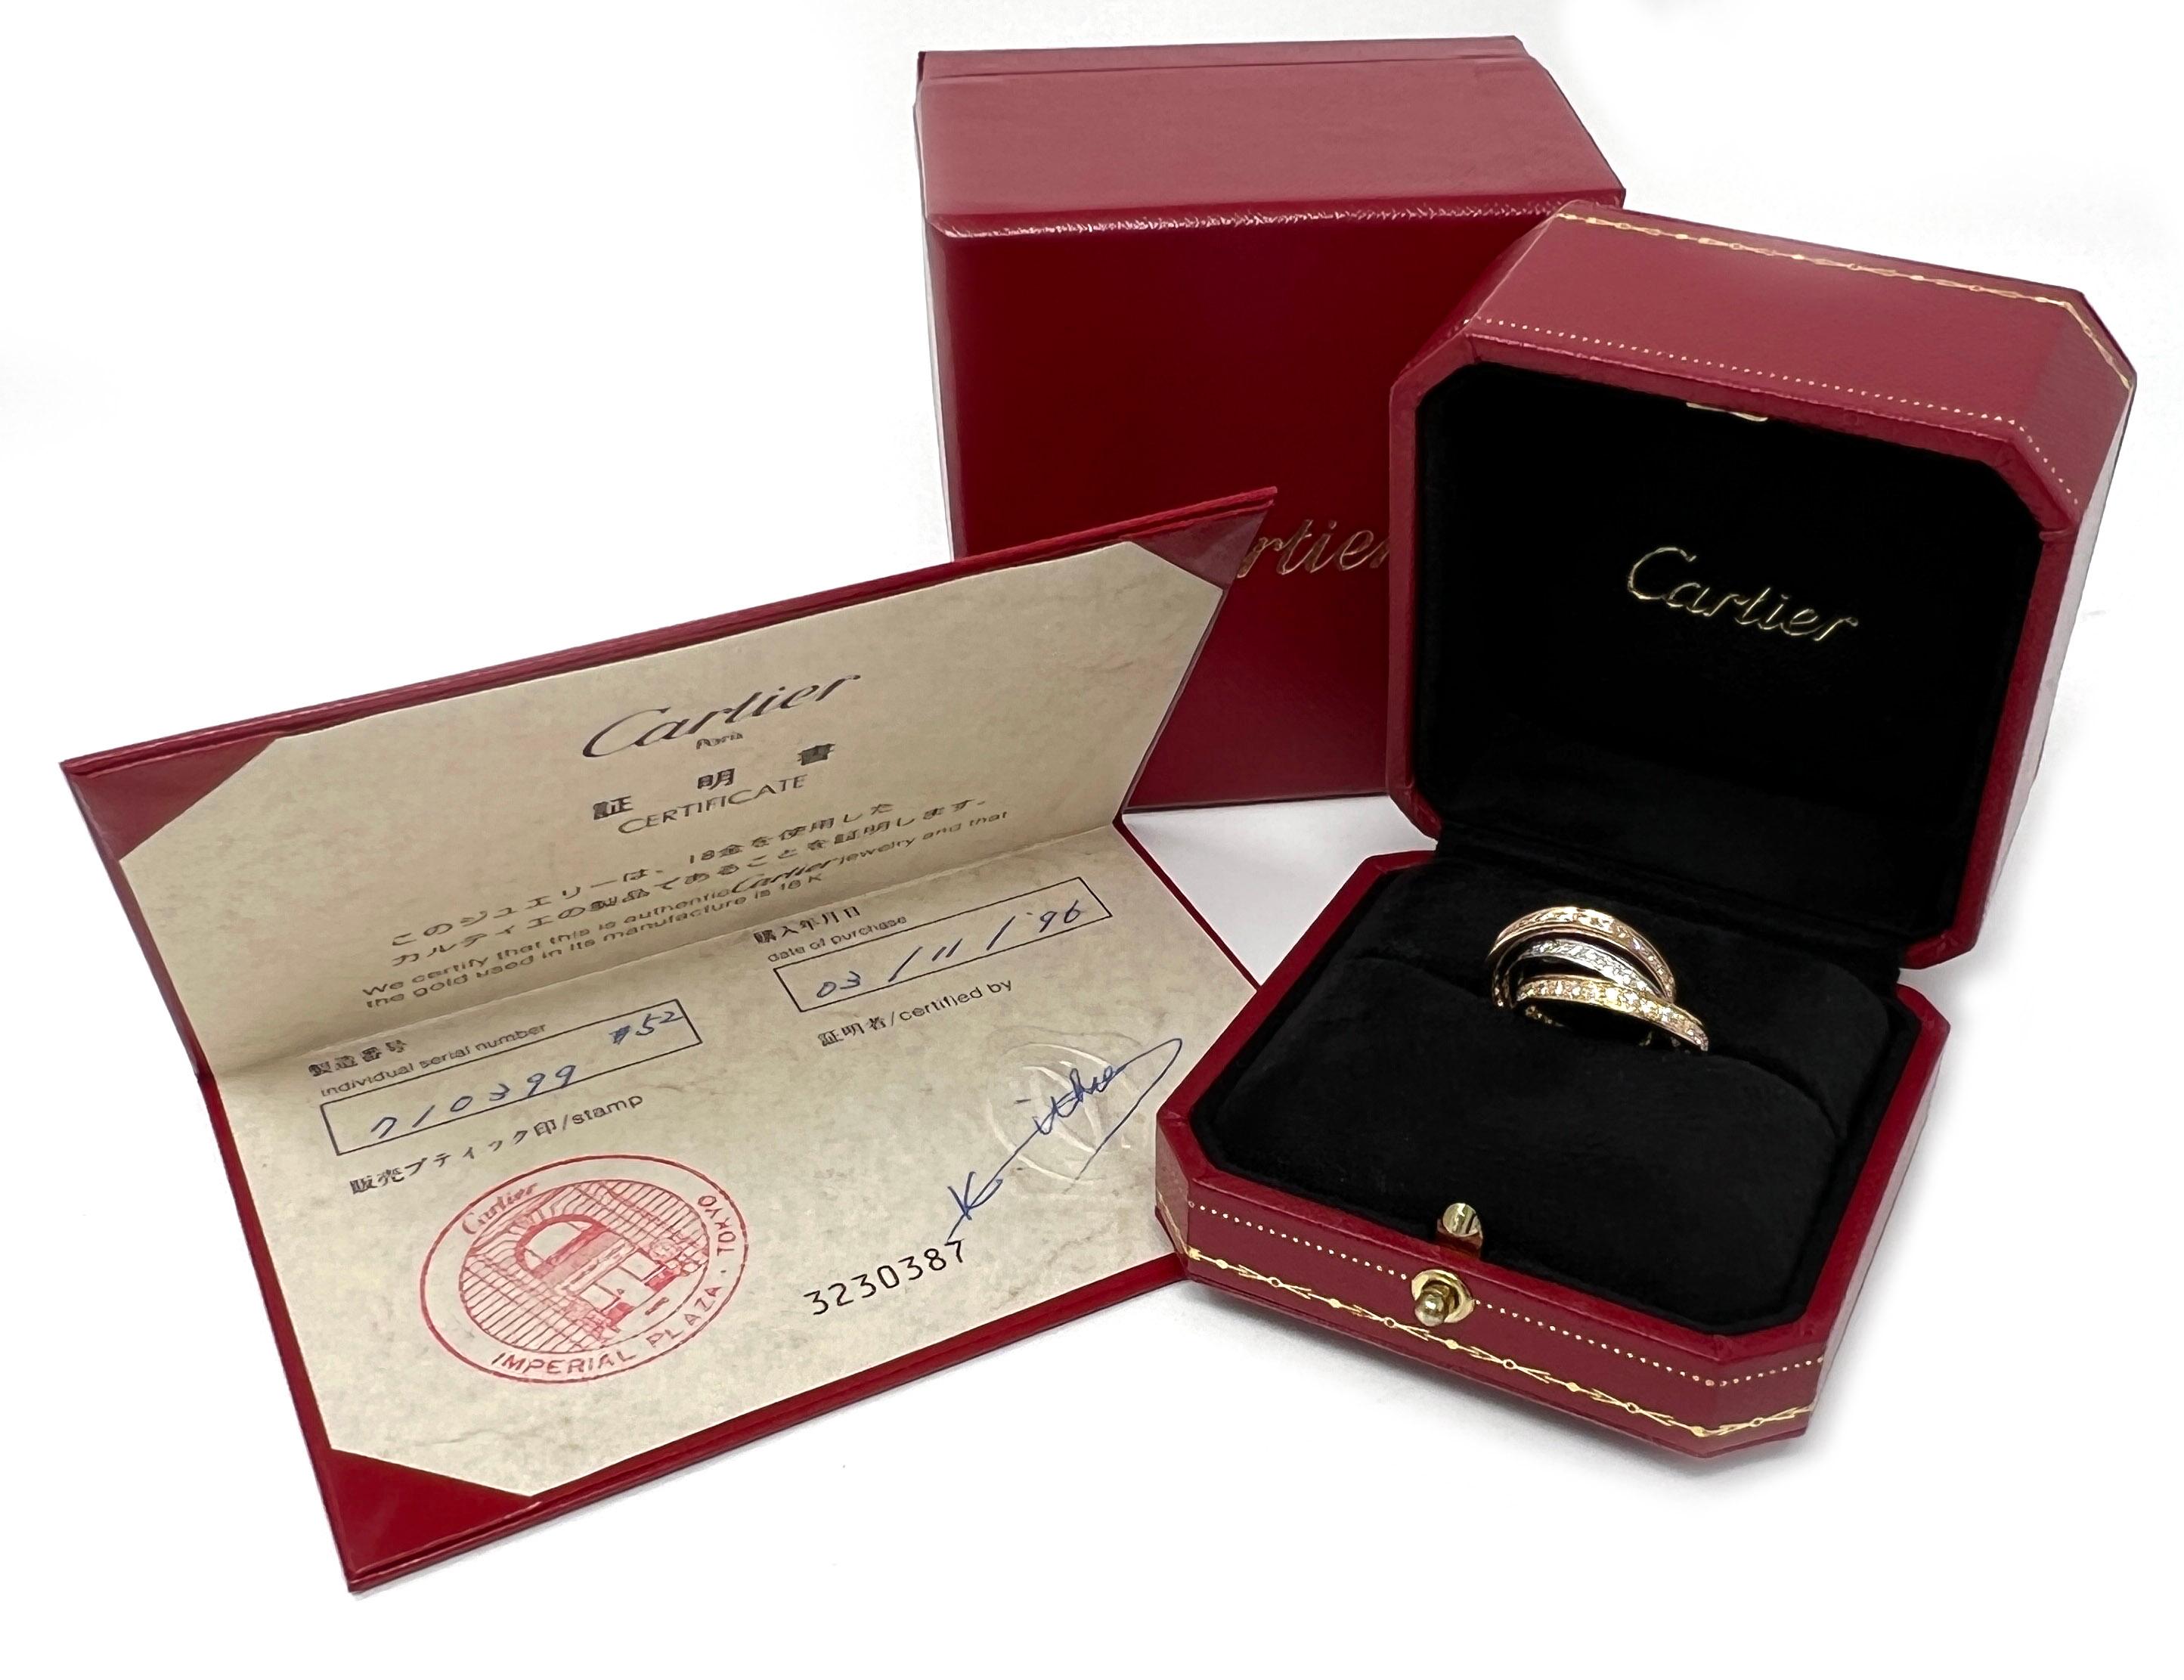 Dies ist ein elitärer, authentischer Bandring von Cartier aus der Collection'S Trinity. Er ist aus 18 Karat Gelb-, Weiß- und Roségold gefertigt und hat eine polierte Oberfläche mit einem dreifach verflochtenen Band aus dreifarbigem Gold, das jeweils